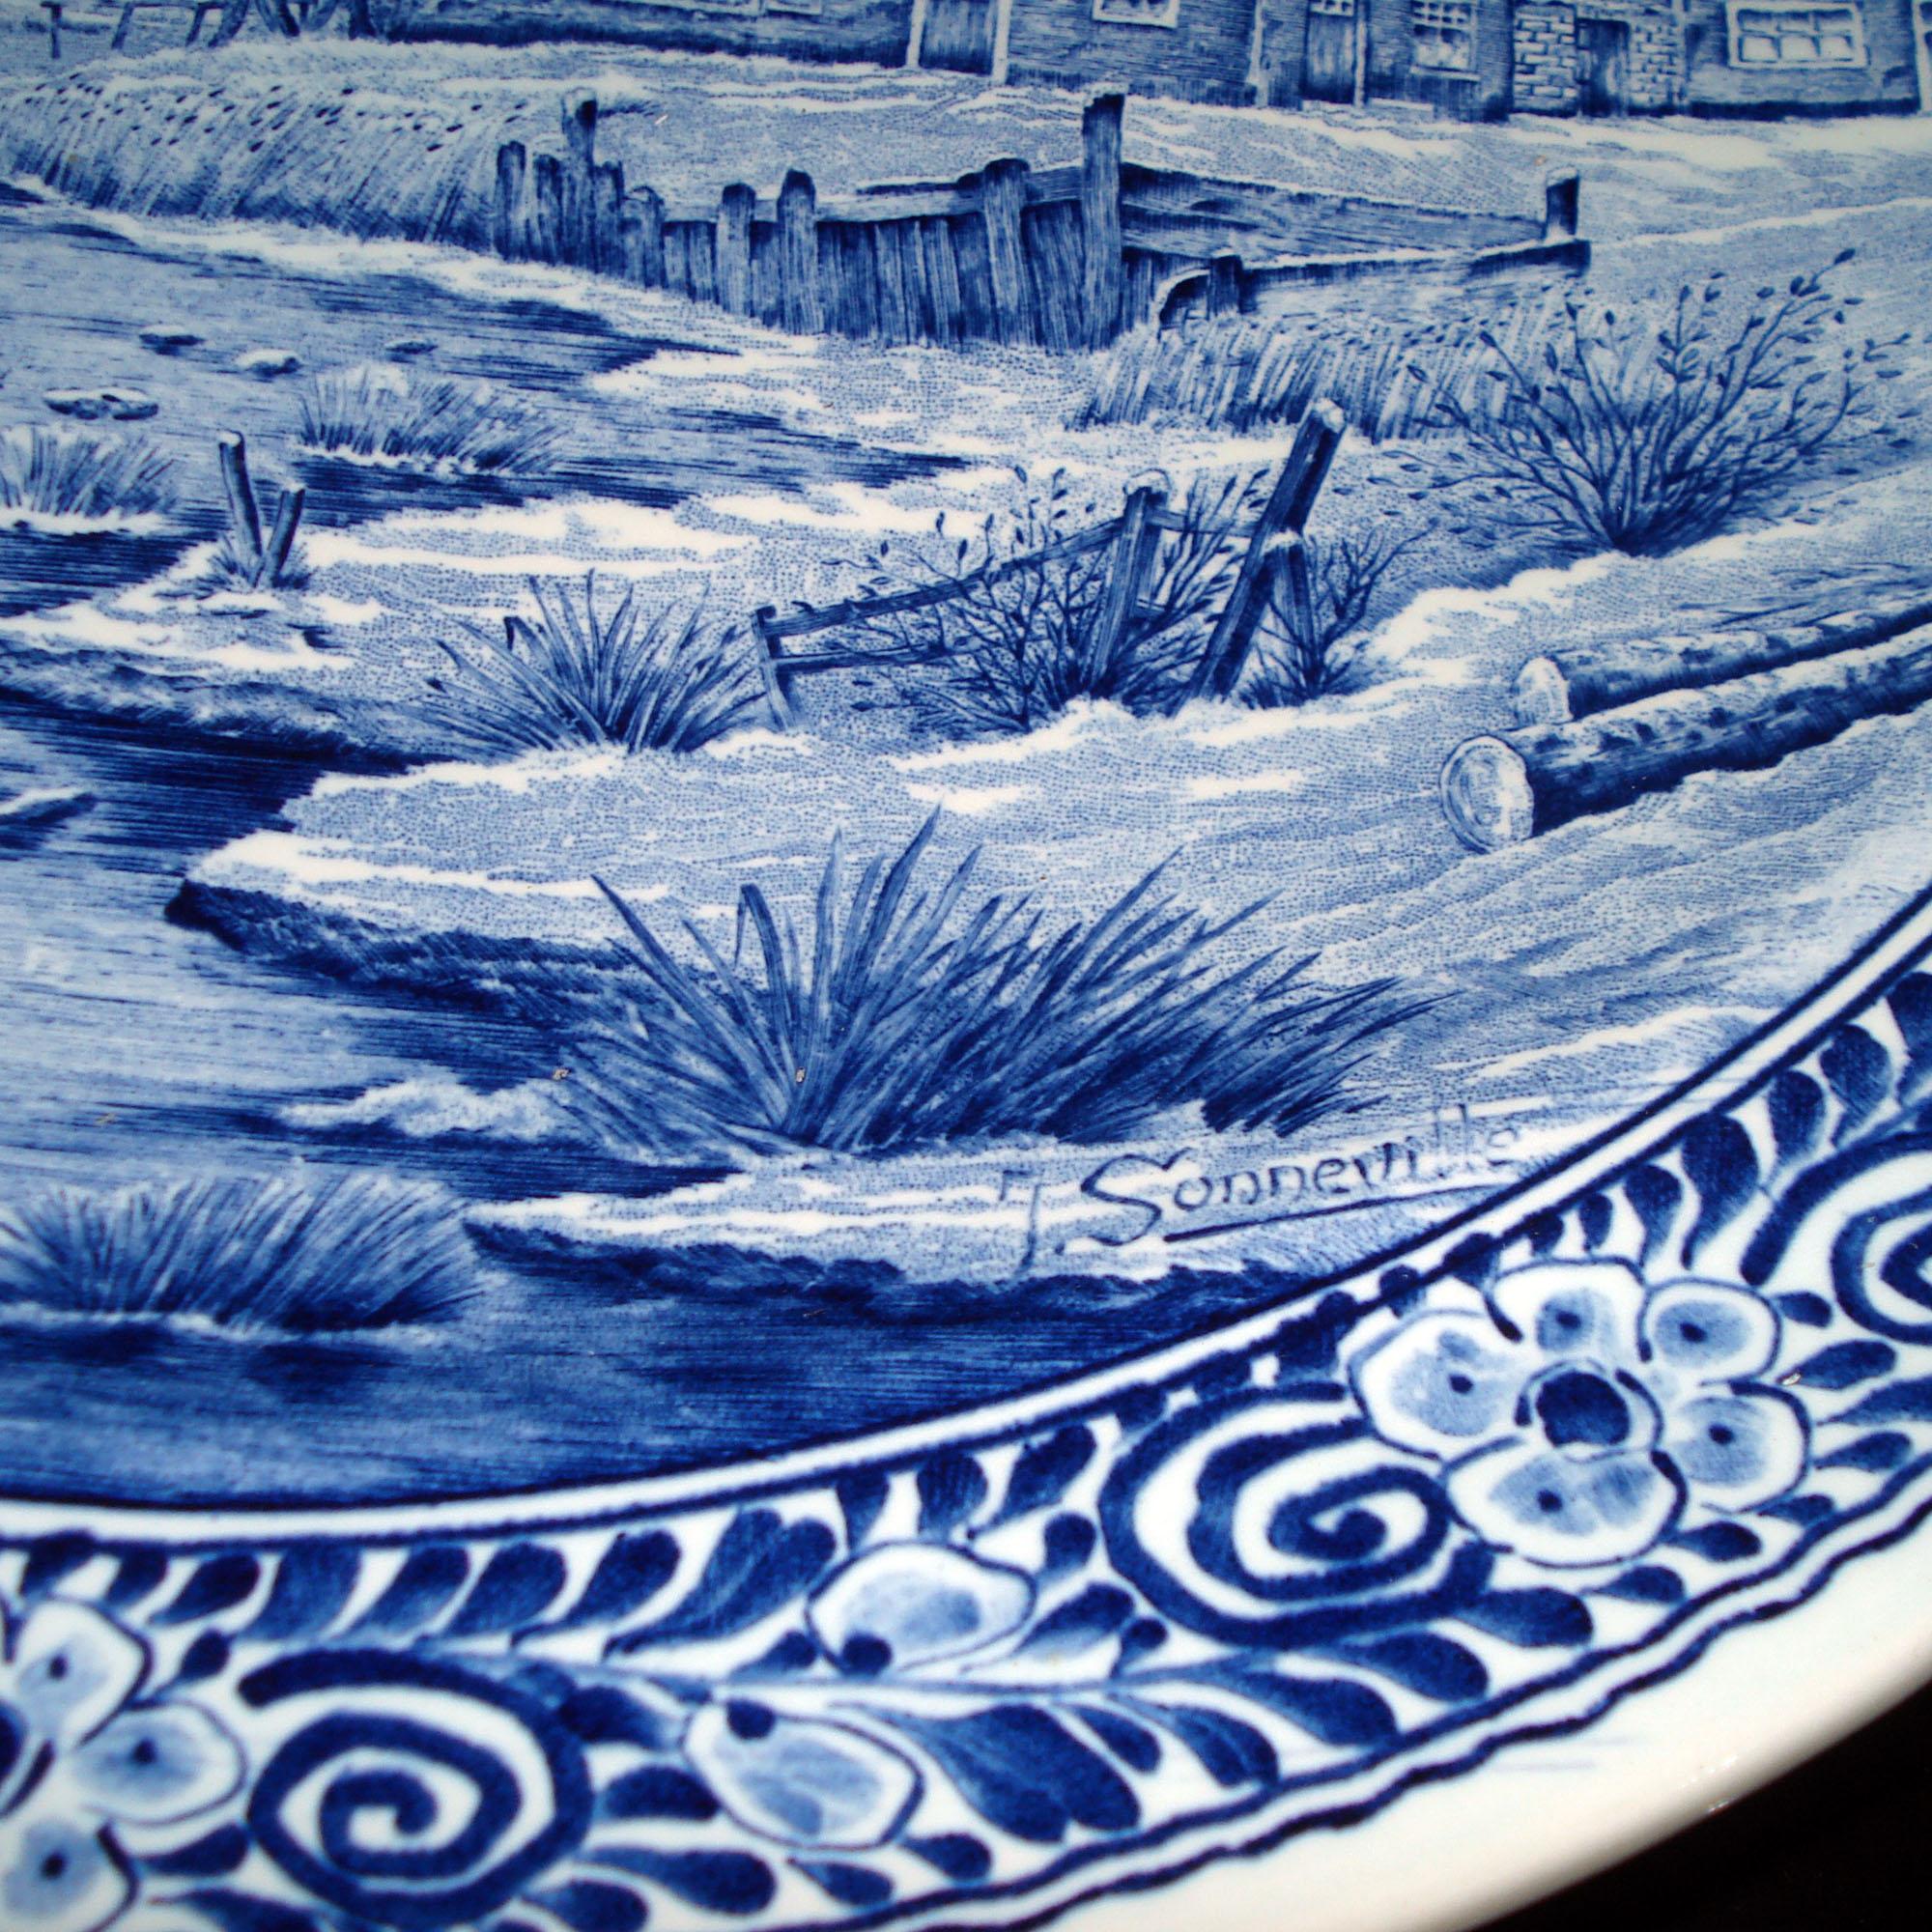 European Vintage Delfts Blue and White Landscape Large Decorative Ceramic Plate